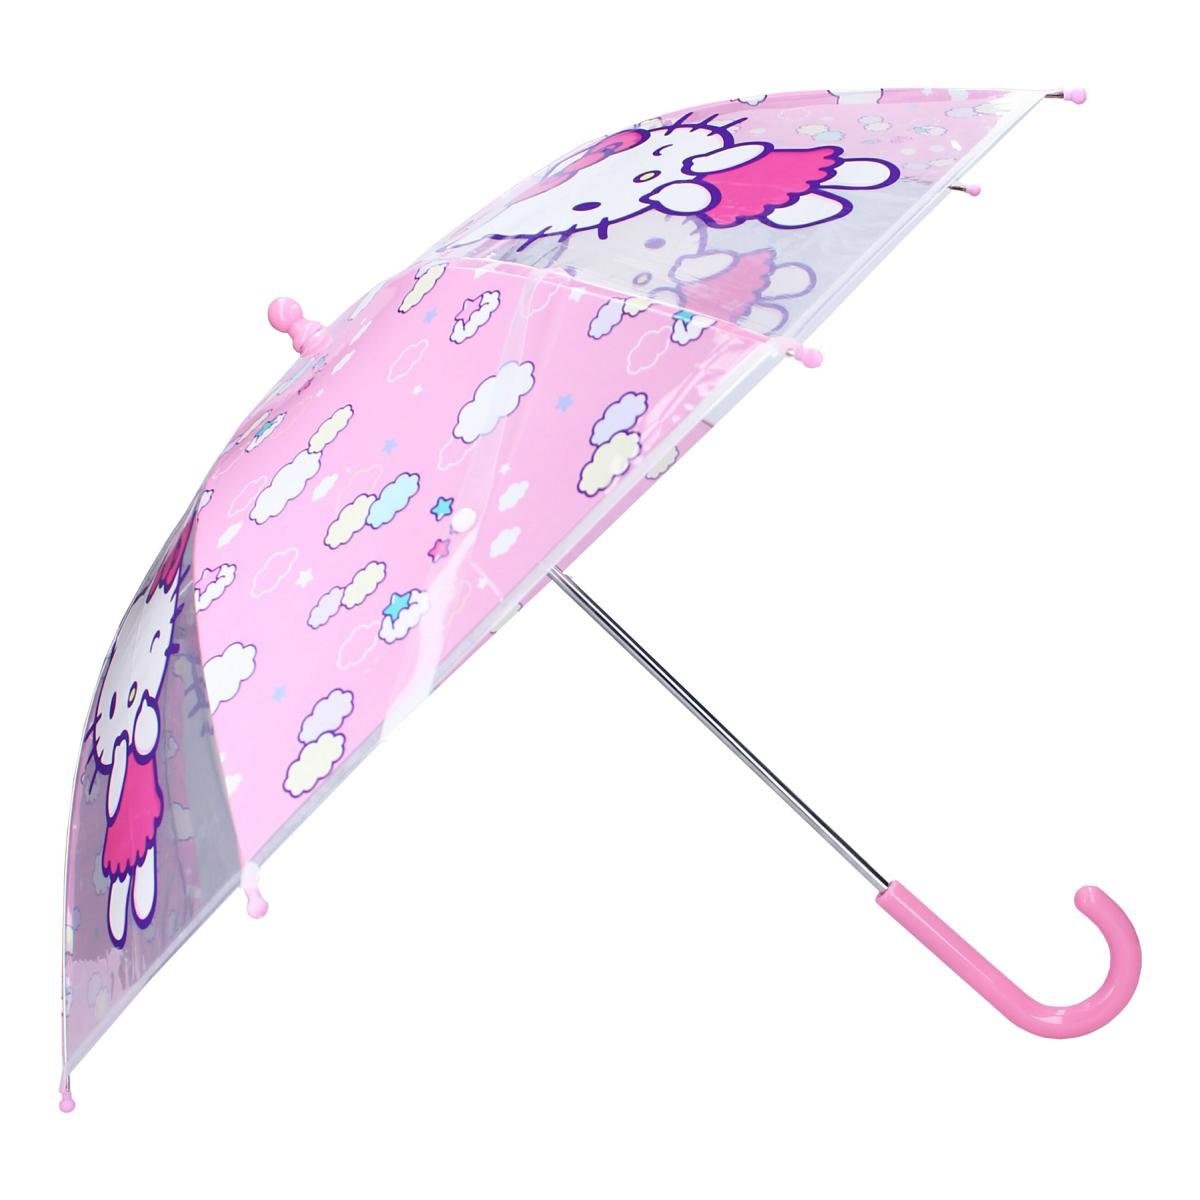 Vadobag Langregenschirm Vadobag Hello Kitty Days Rainy Kinderschirm Regenschirm